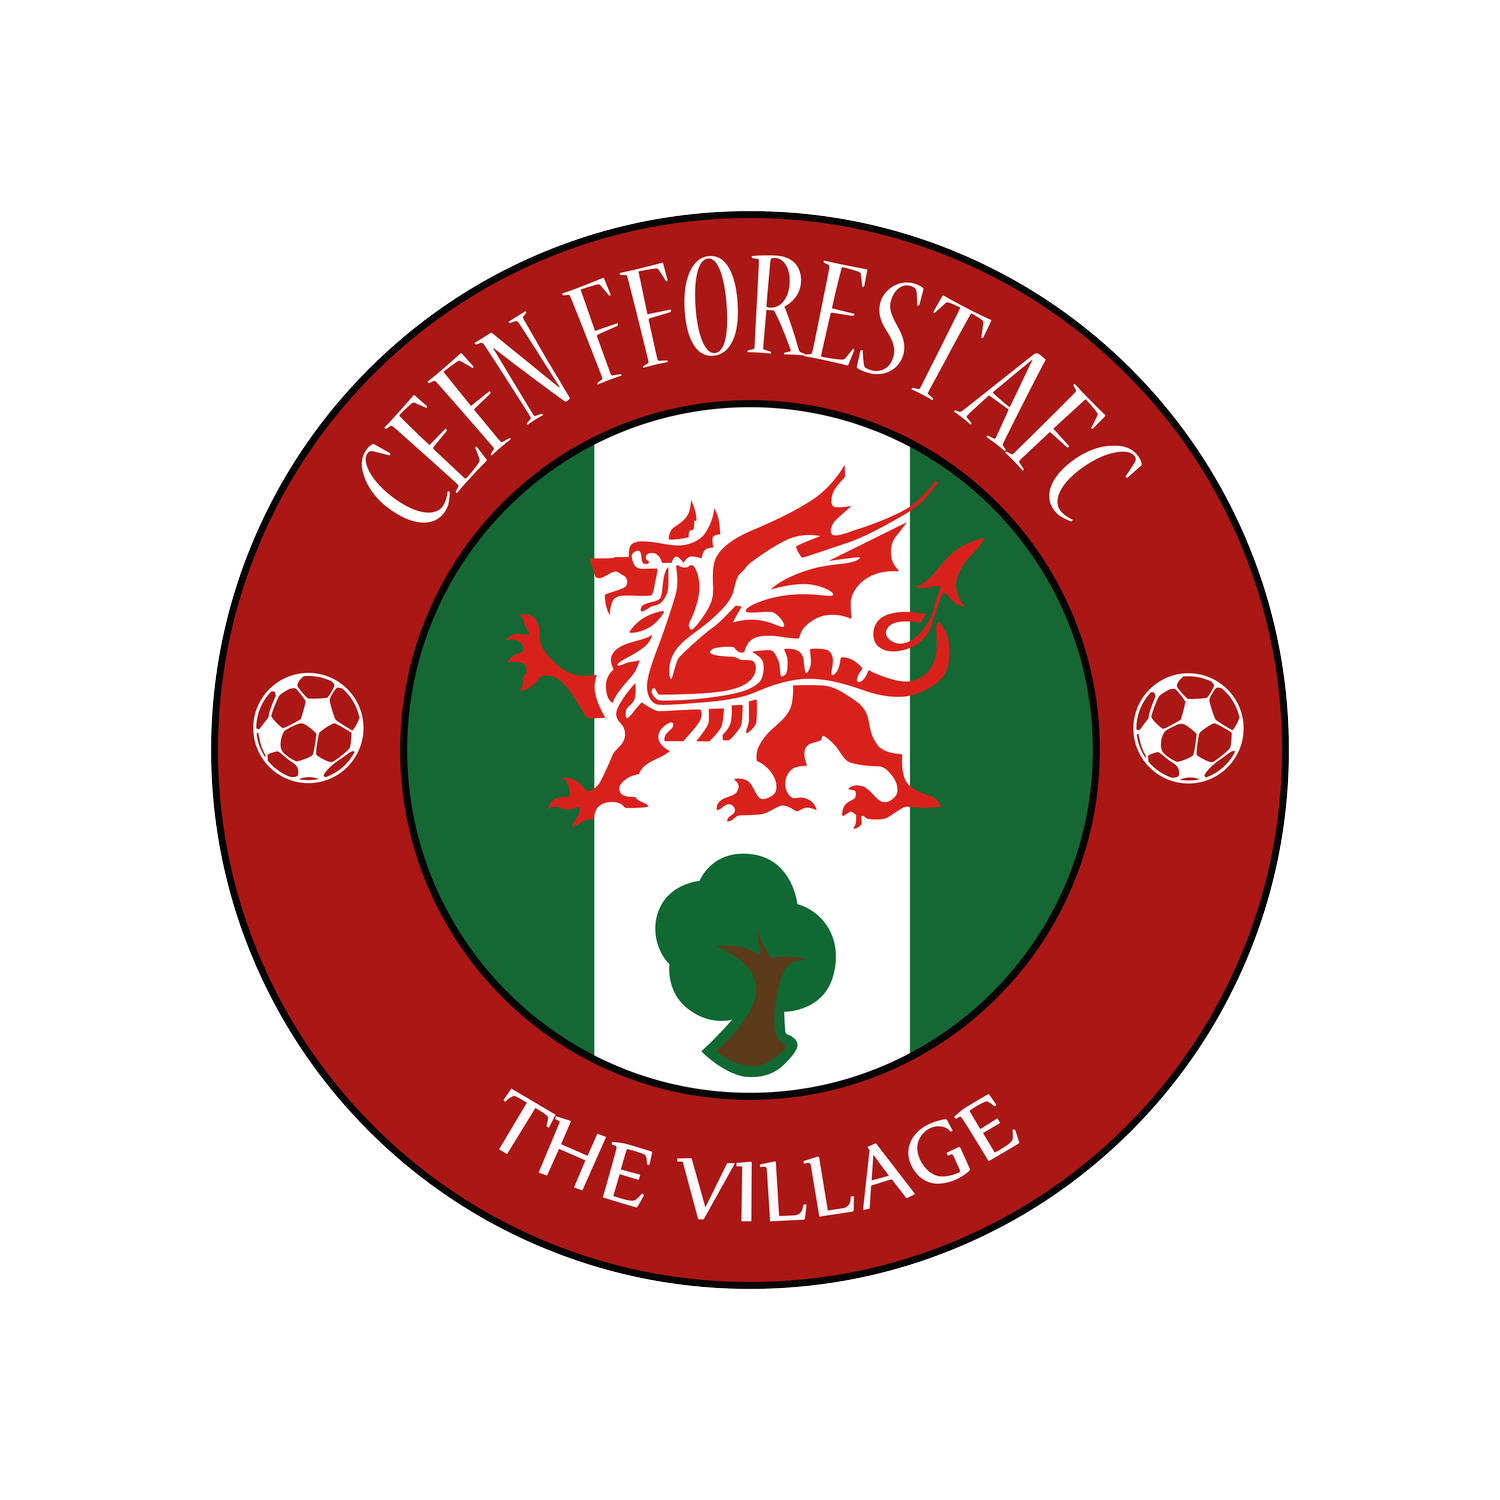 Cefn Fforest AFC